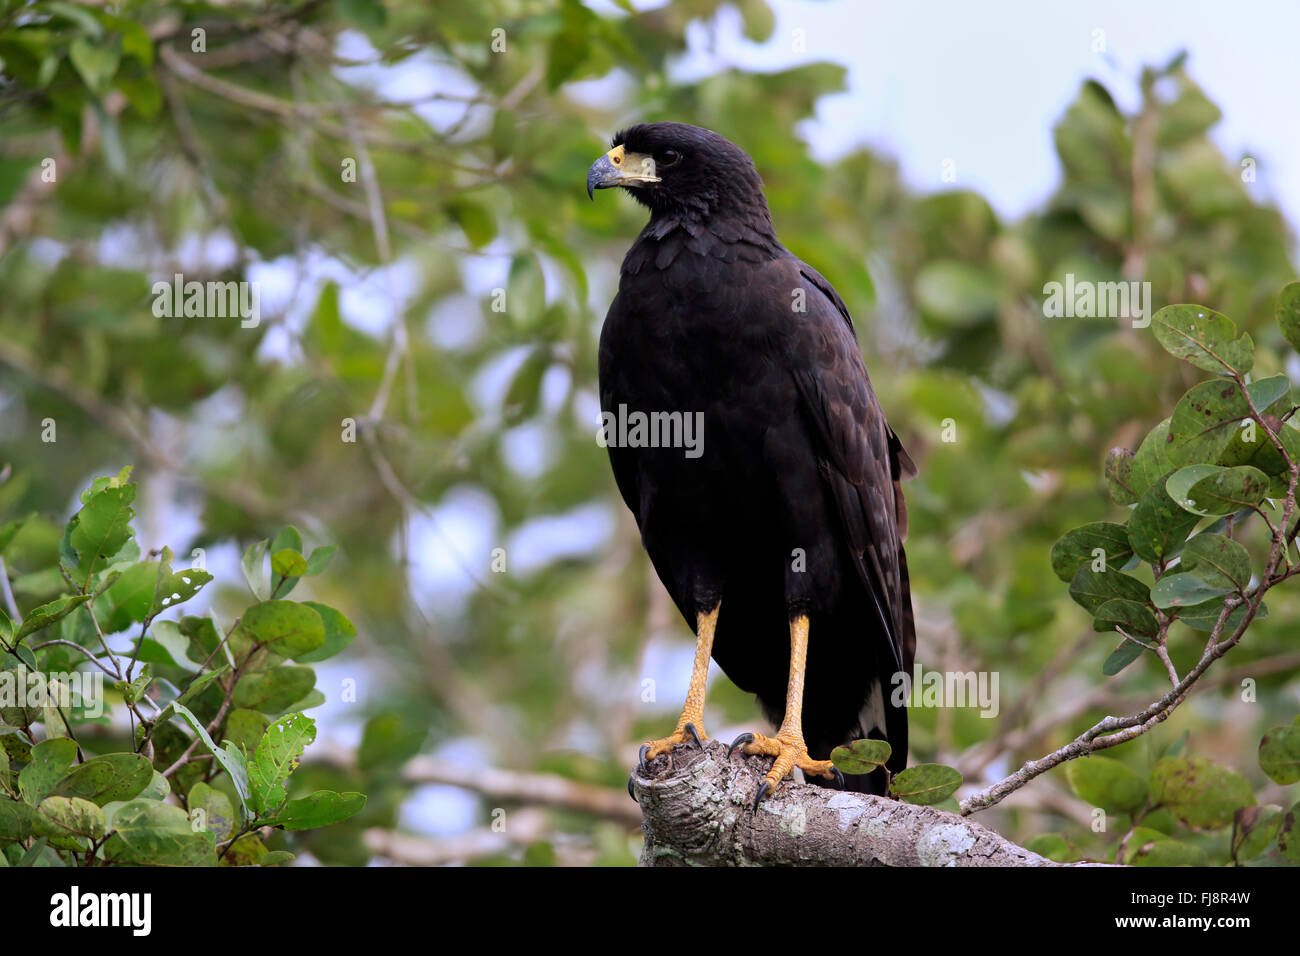 Great Black Hawk, des profils sur l'arbre, Pantanal, Mato Grosso, Brésil, Amérique du Sud / (Buteogallus urubitinga) Banque D'Images